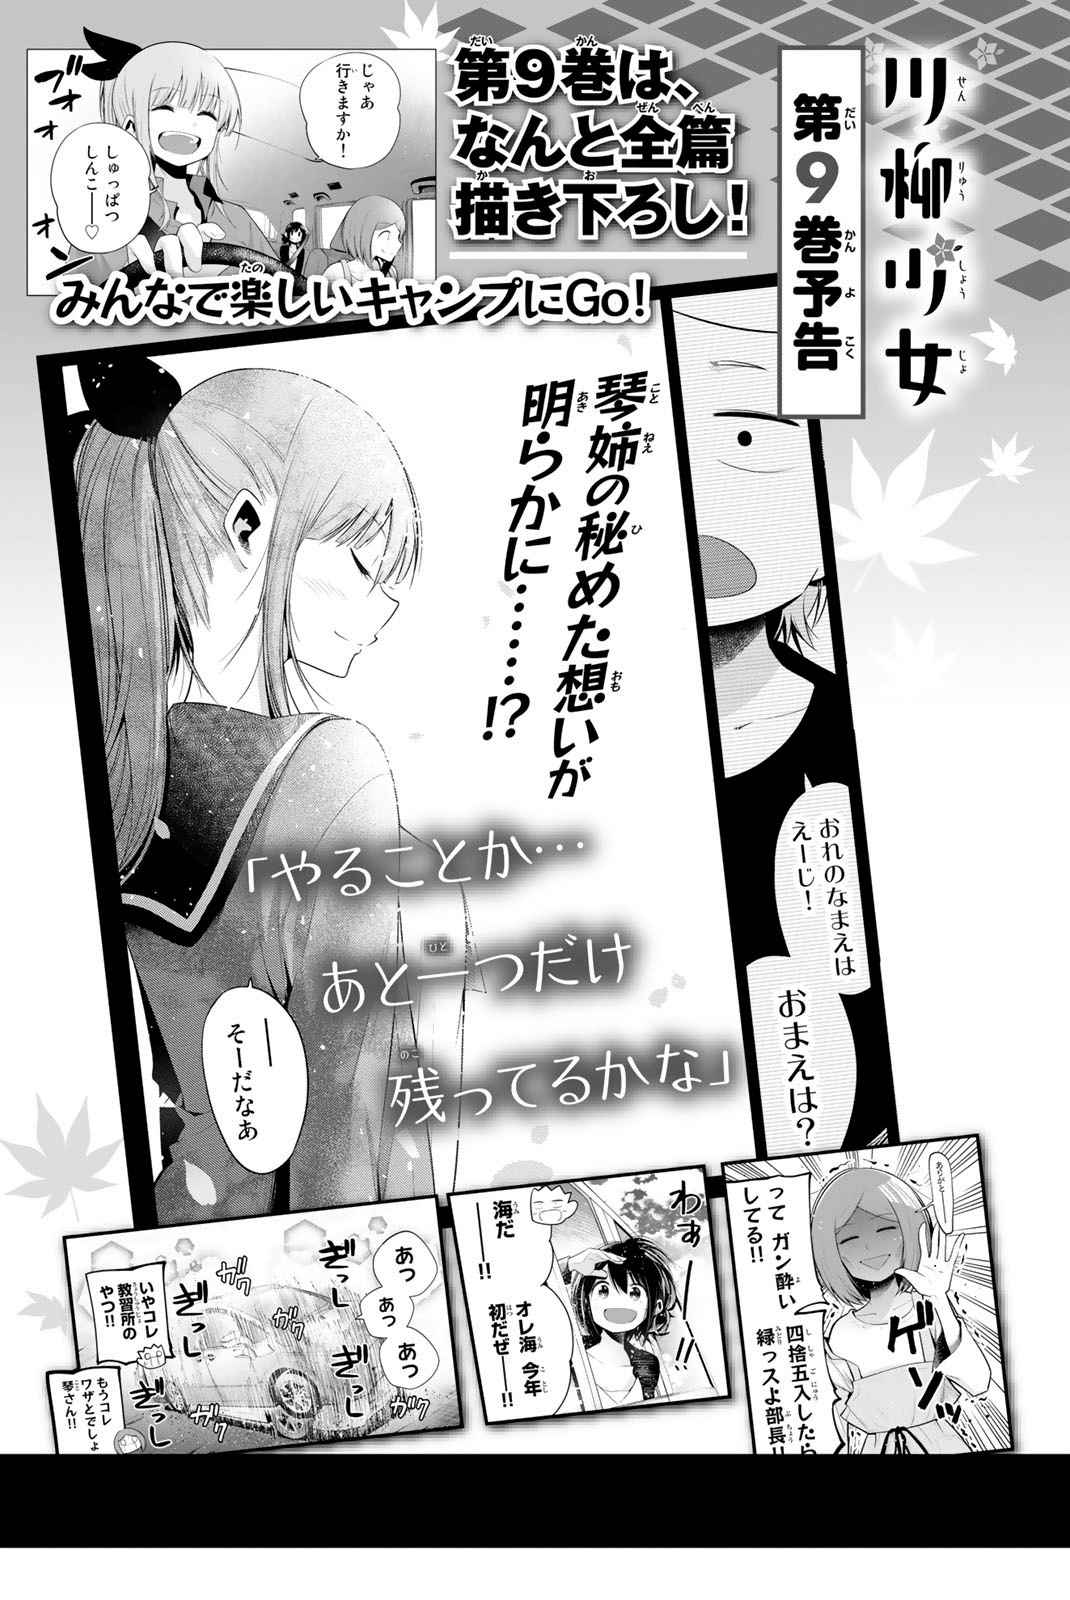 Senryuu Shoujo Vol. 8 Ch. 119 Nanako and Komachi's Valentine's 2